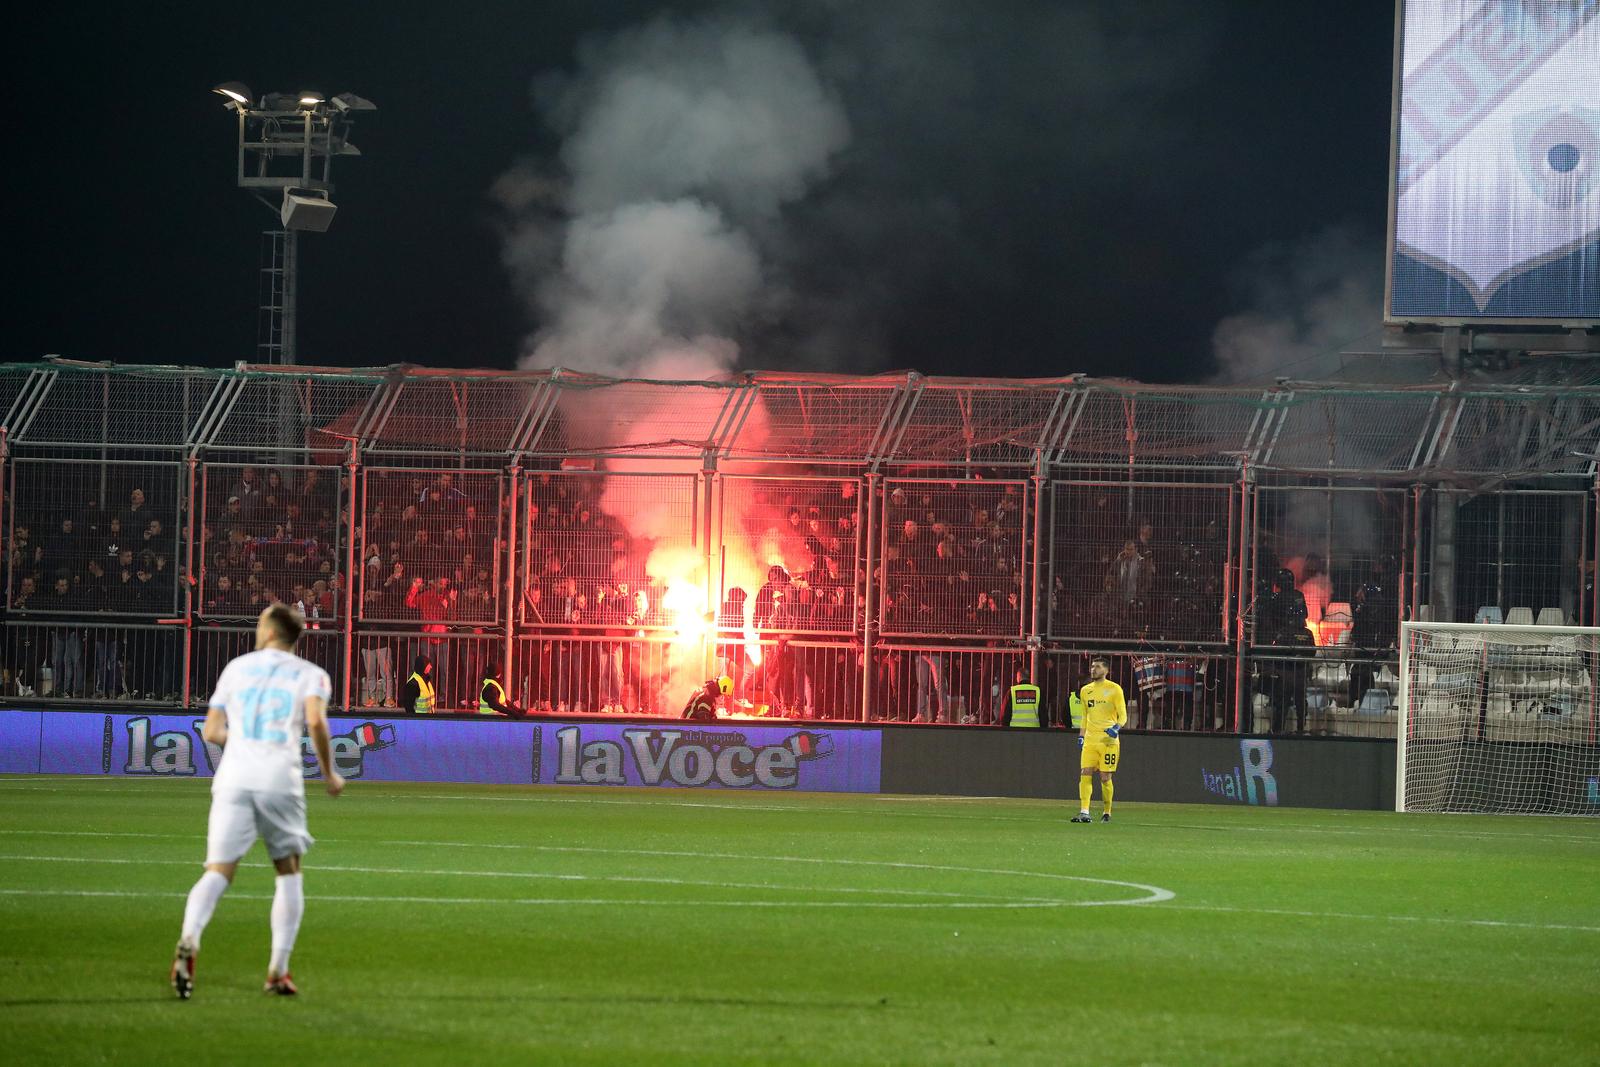 21.11.2021., Rijeka, stadion Rujevica - Hrvatski Telekom Prva liga, 16. kolo, HNK Rijeka - HNK Hajduk. Photo: Goran Kovacic/PIXSELL